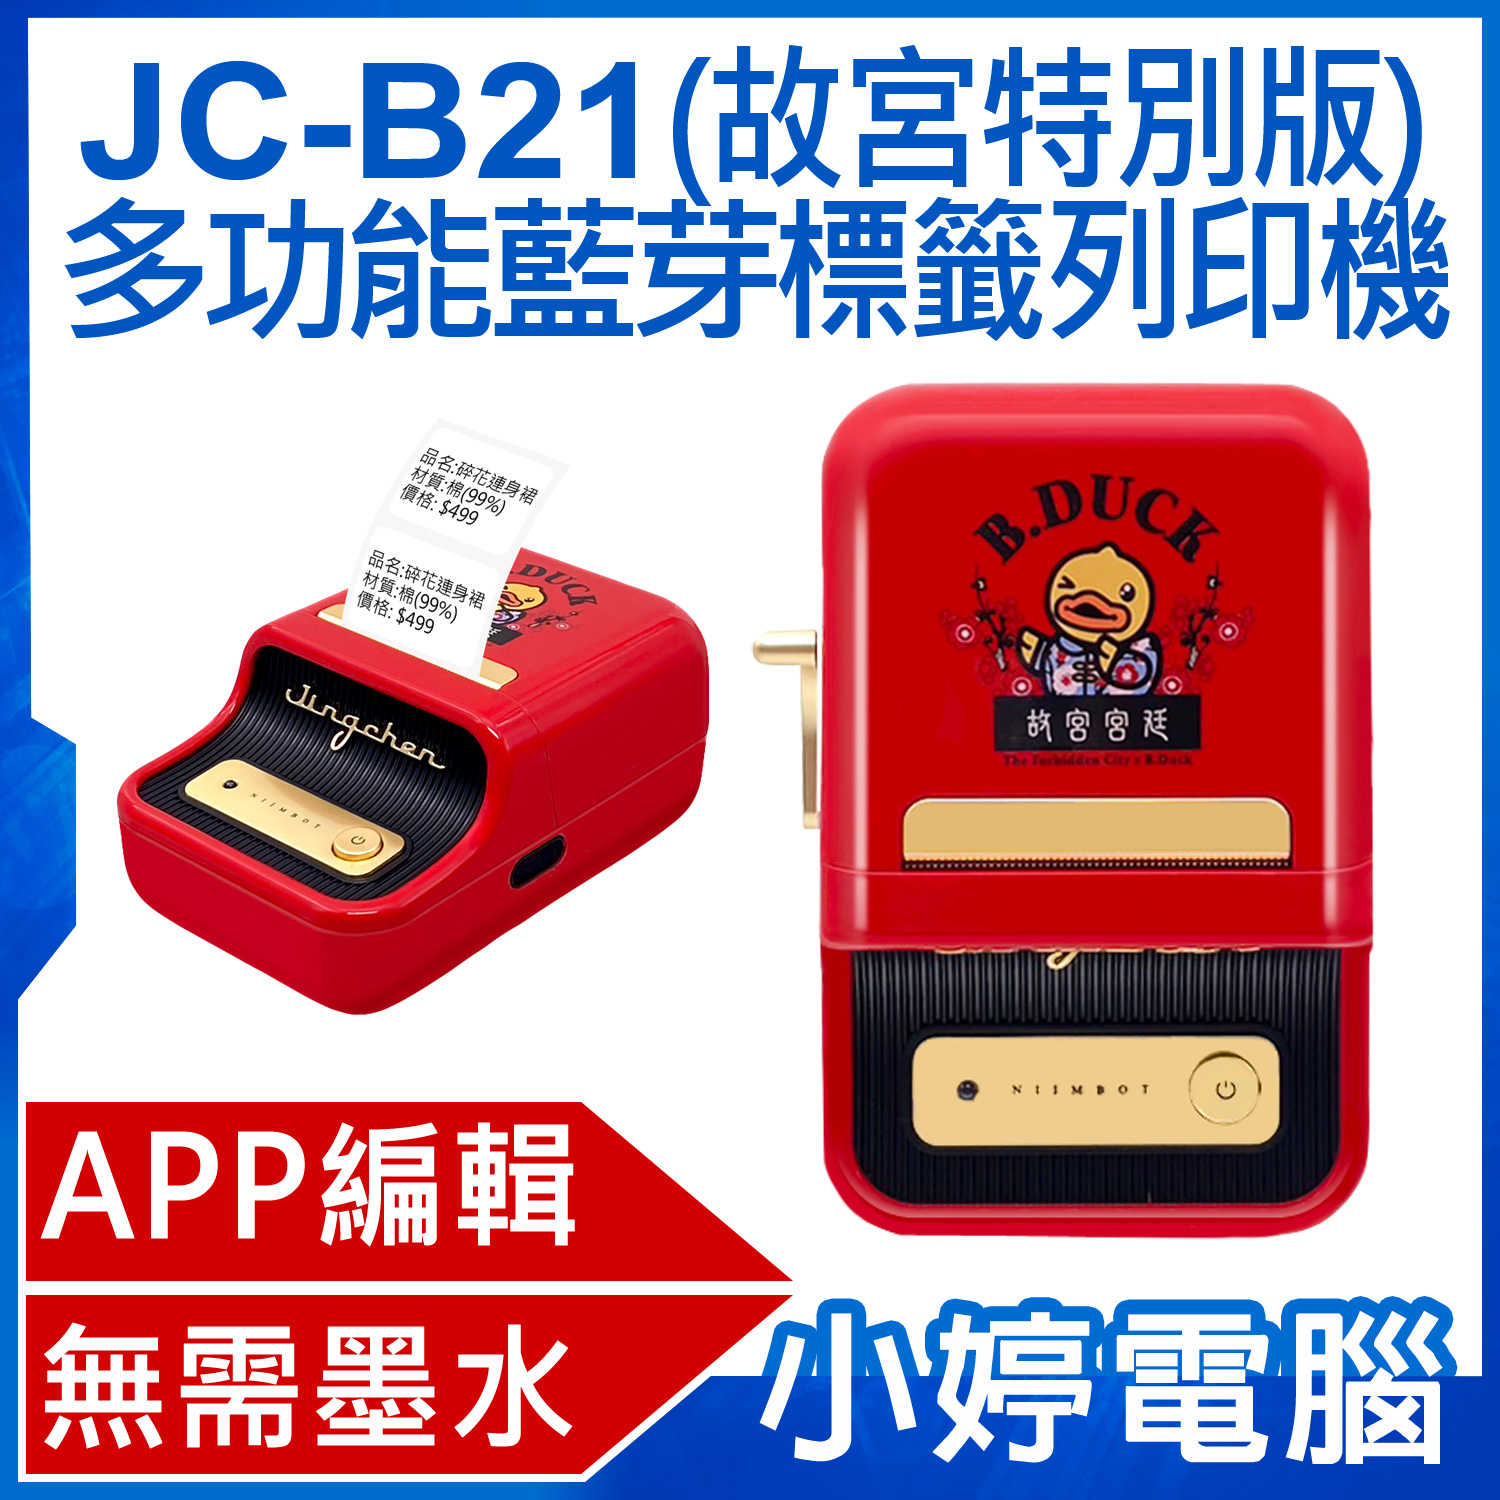 【小婷電腦】JC-B21 多功能藍芽標籤列印機 故宮特別版 APP編輯 無需墨水 批量列印 多種版型